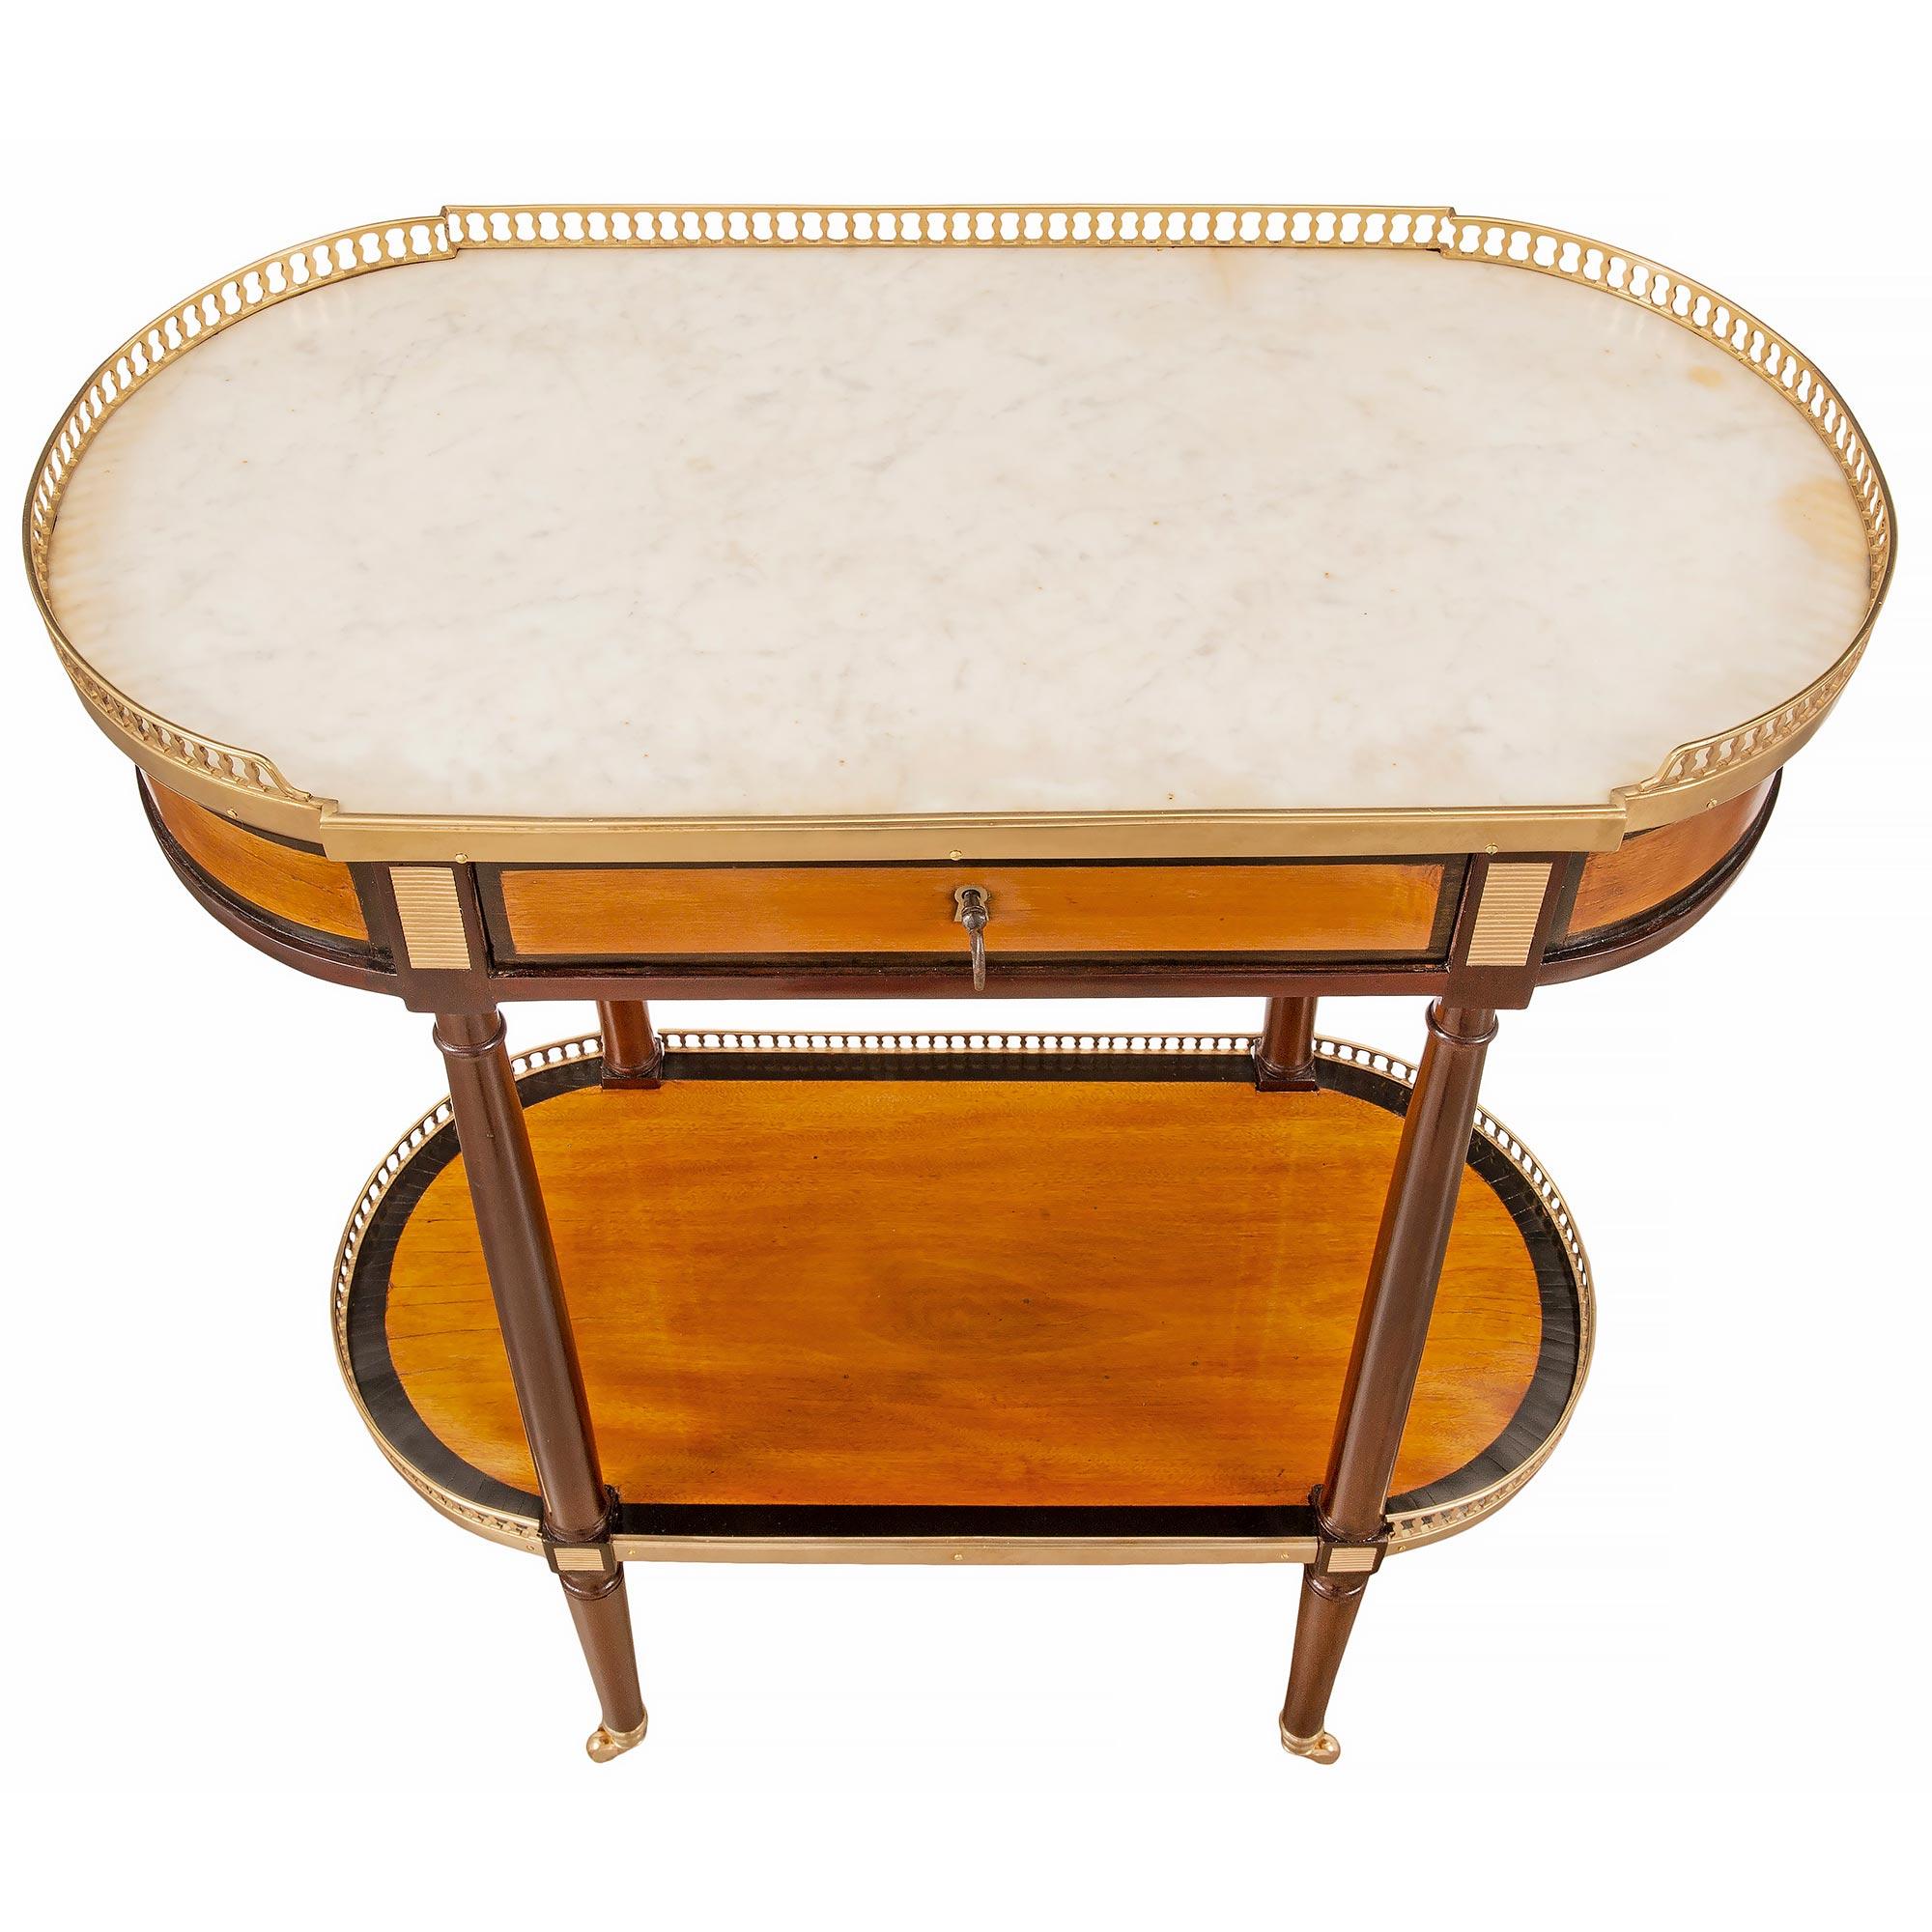 Très élégante table d'appoint ovale de style Louis XVI en acajou, bois de satin et bronze doré. La table est surélevée par de fins pieds circulaires coniques avec leurs roulettes originales en bronze doré. Les pieds sont reliés par un étage de